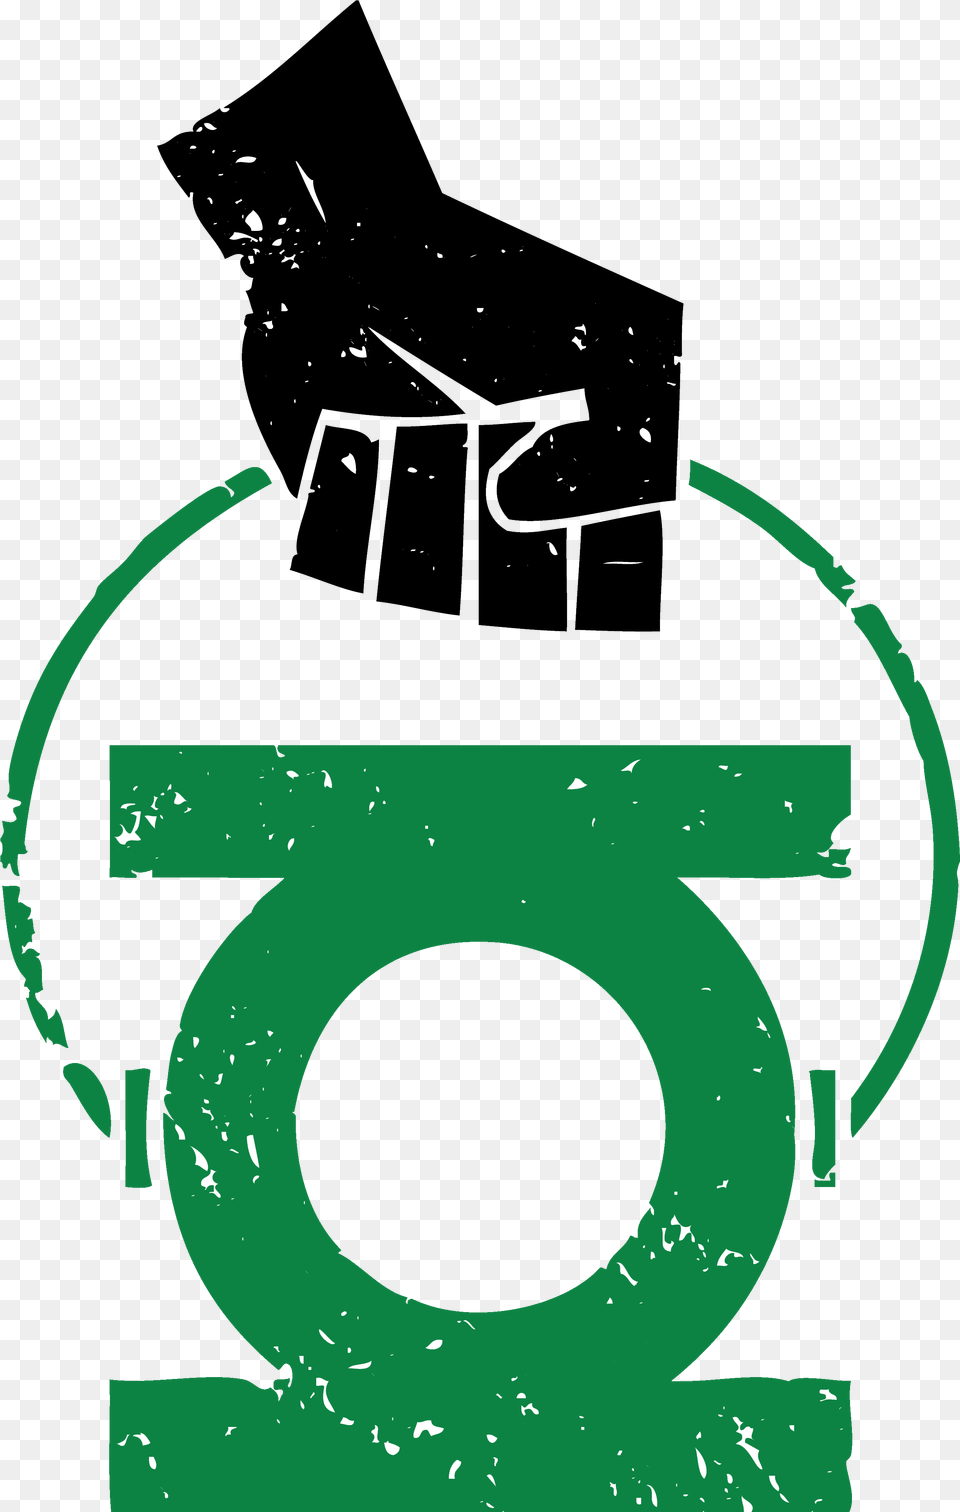 Green Lantern Logo Tattoo Green Lantern Logo Old, Light, Lighting, Smoke Pipe Png Image